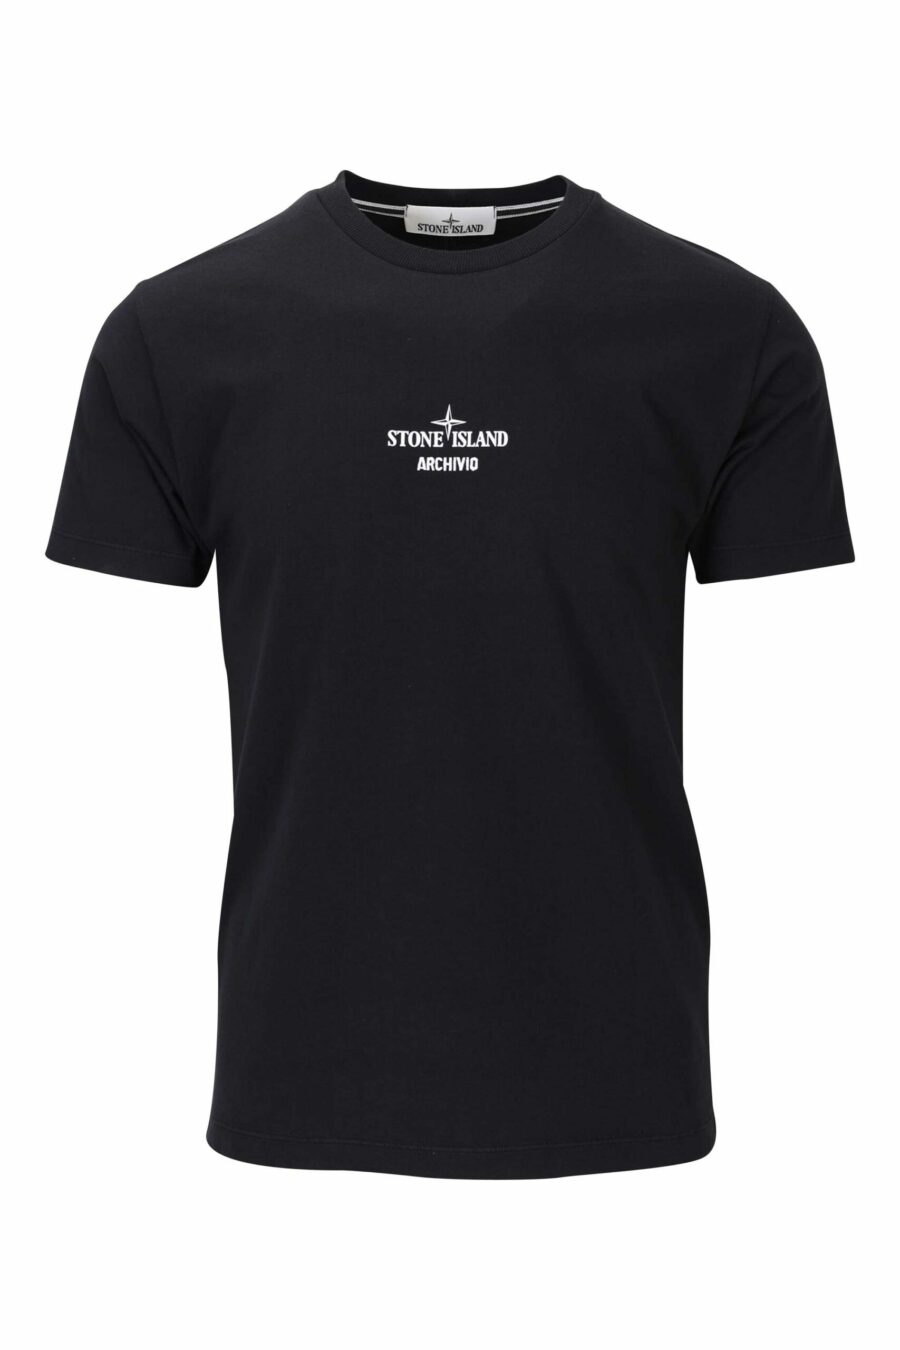 Schwarzes T-Shirt mit mittigem Logo und Druck auf dem Rücken - 8052572755927 skaliert